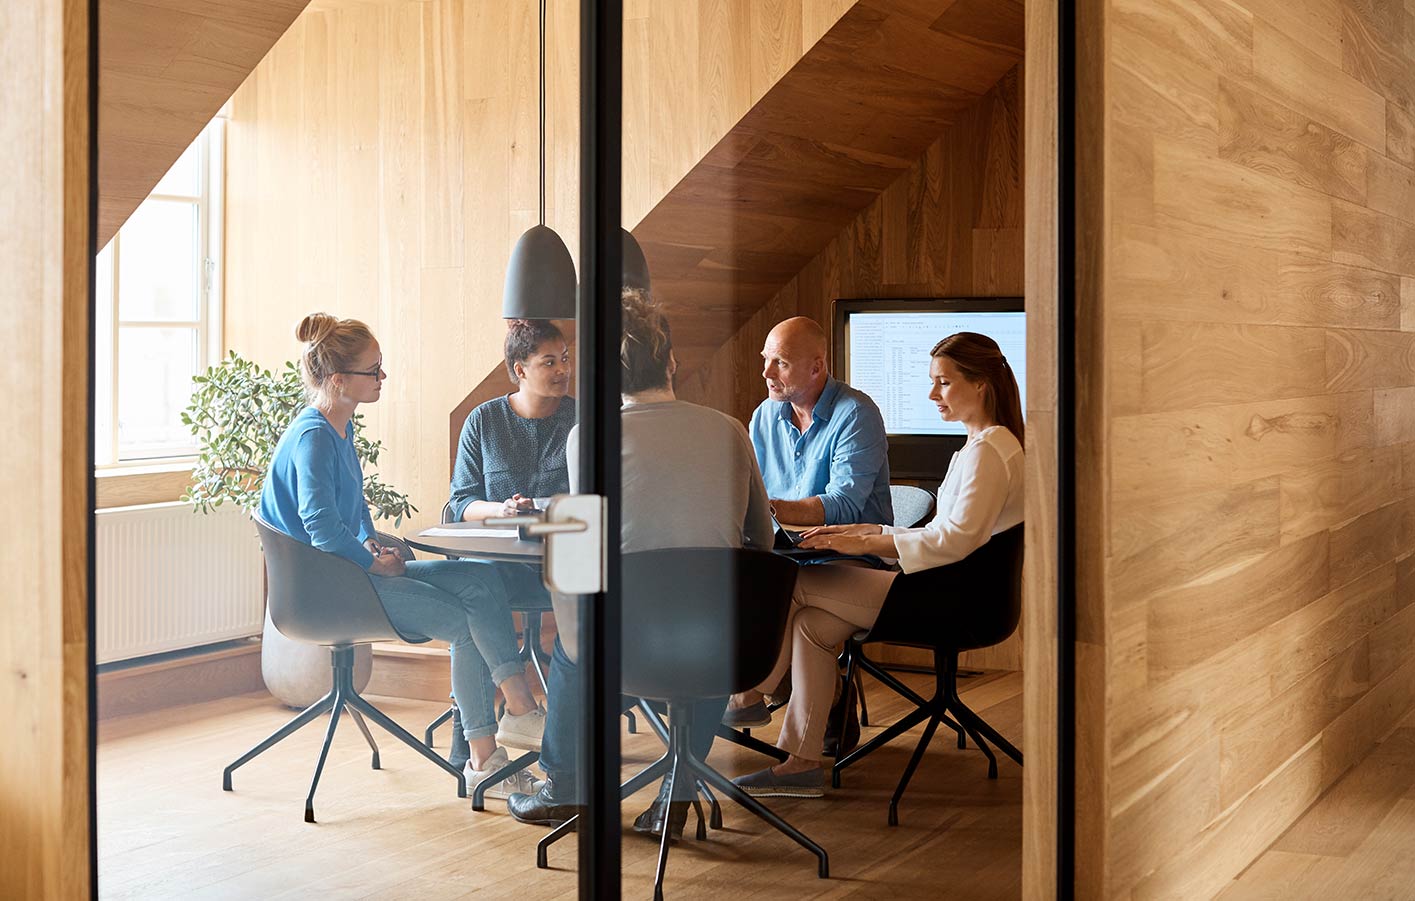 Glastür - dahinter sieht man ein Konferenzraum mit Menschen, die sich in einem Meeting befinden